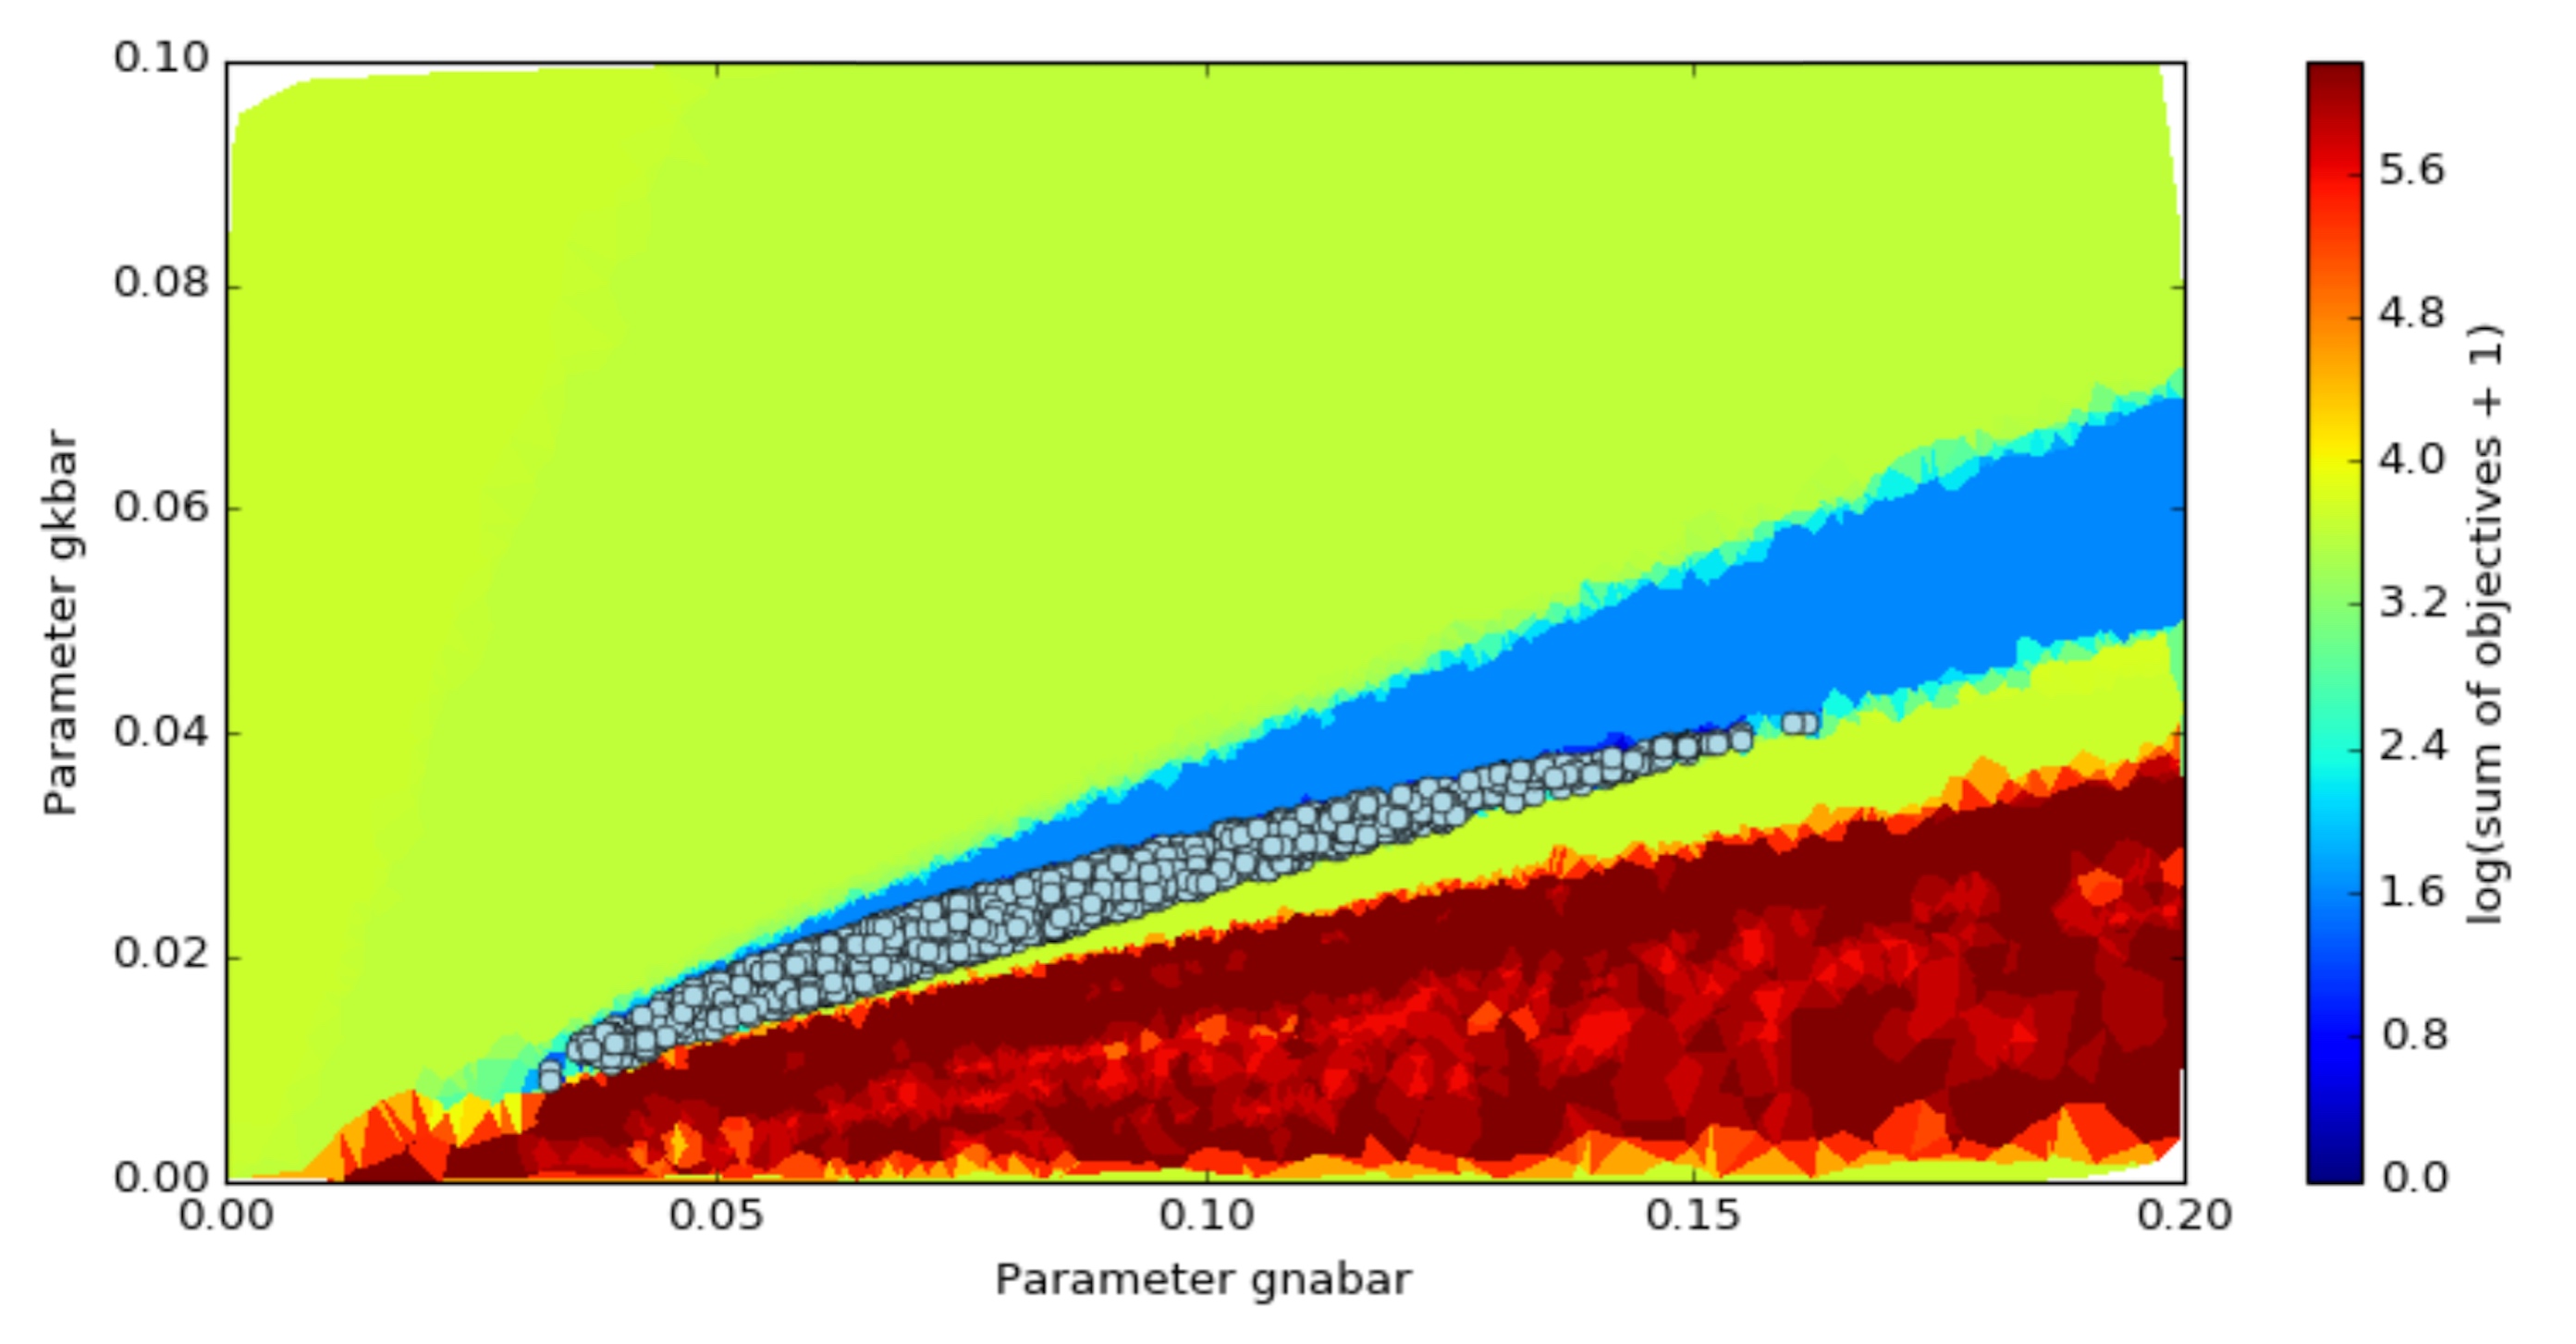 Parameter landscape